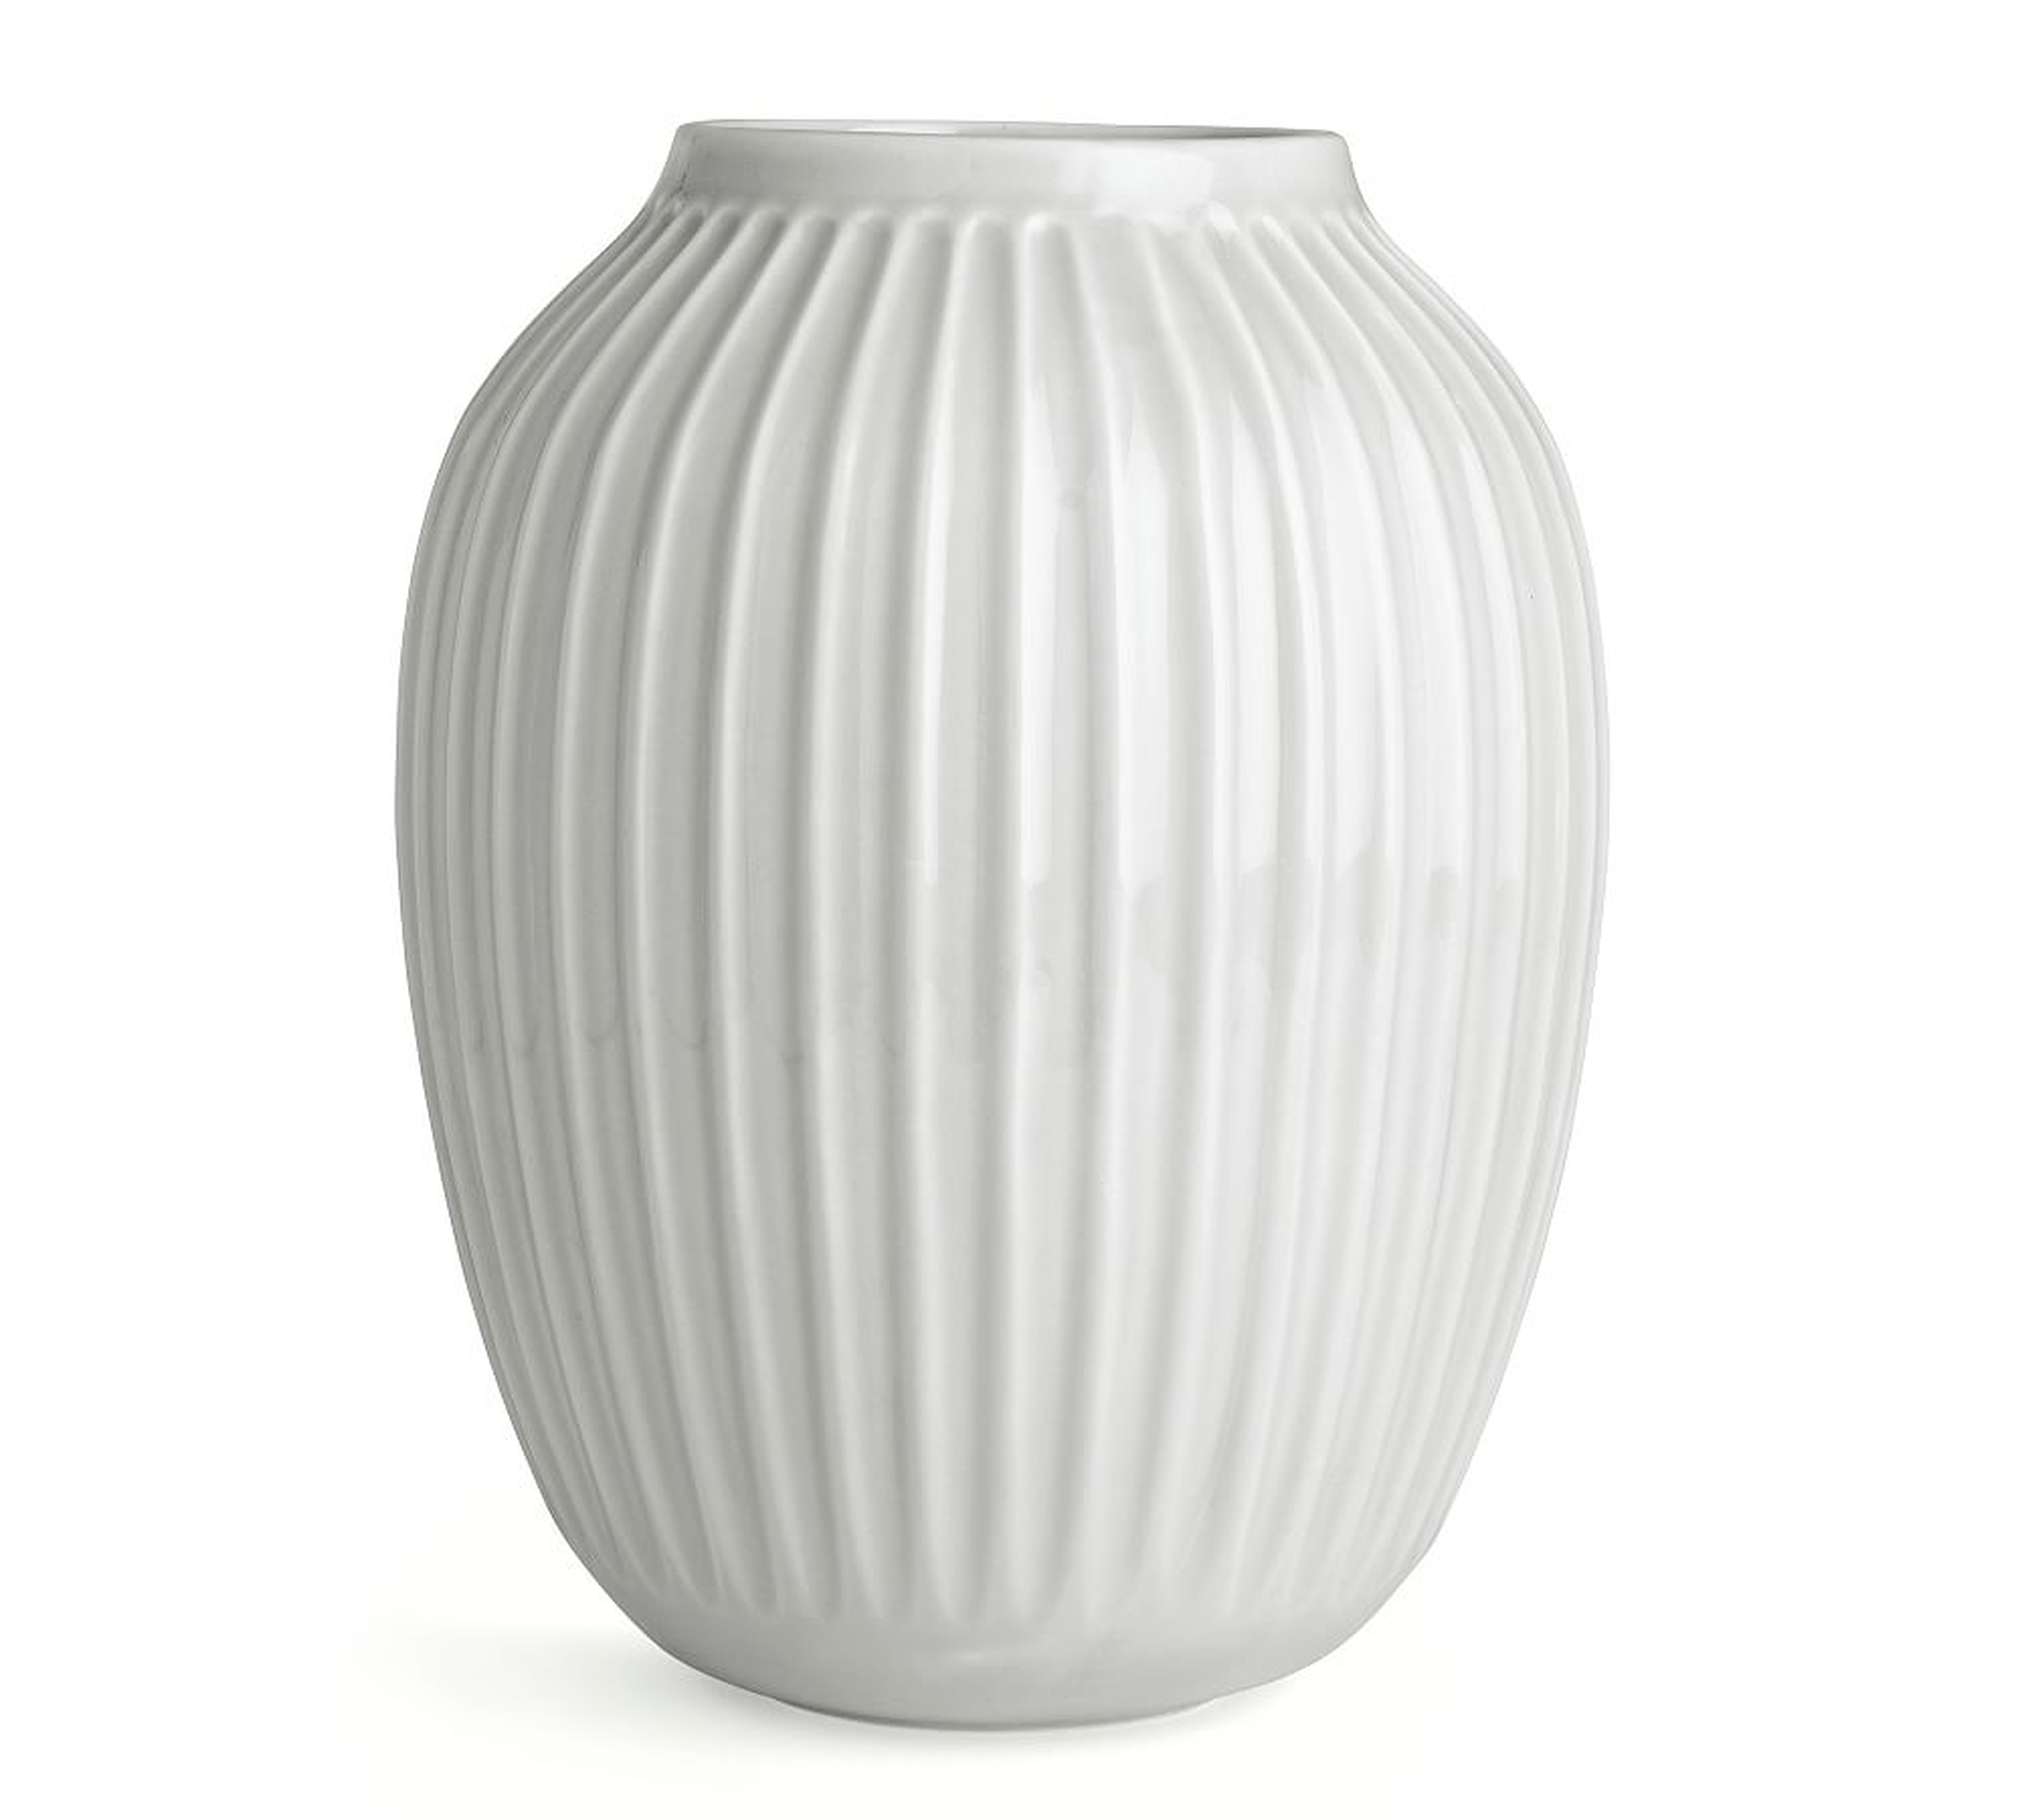 Kahler Hammershoi Vase, White Porcelain, Medium - Pottery Barn